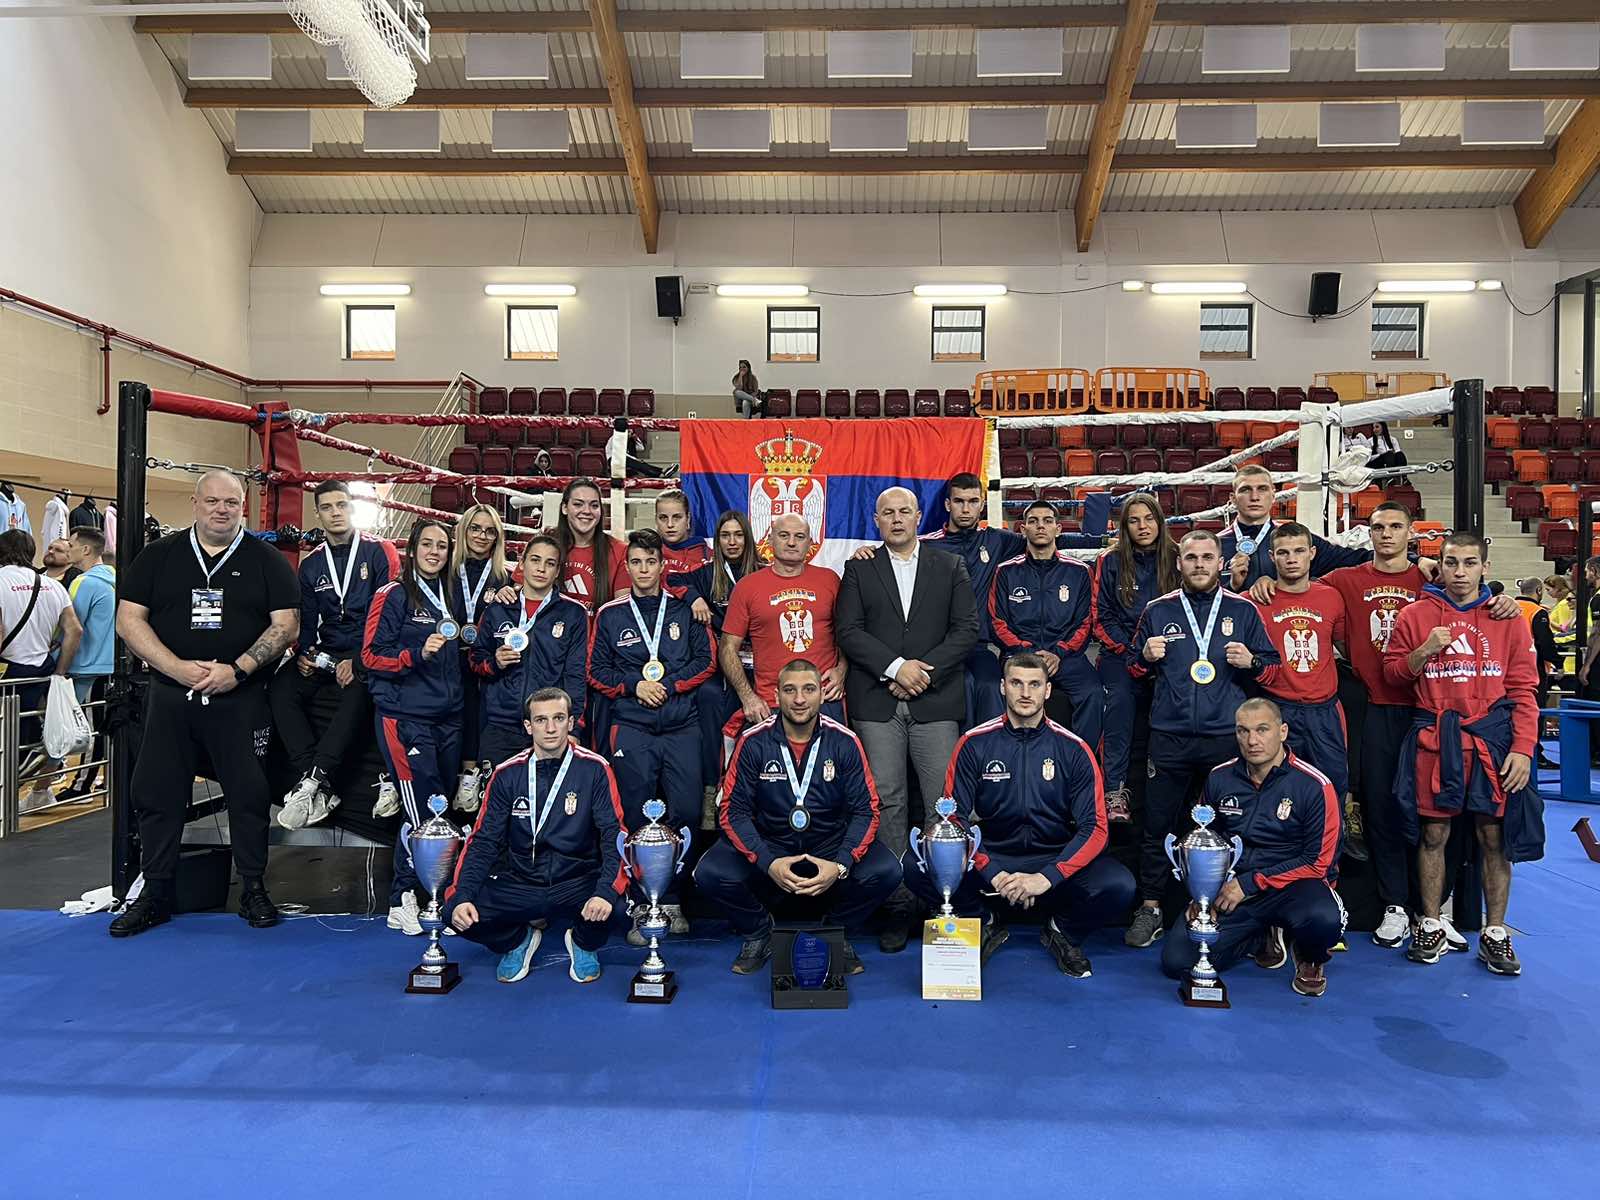  srbija osvojila 11 medalja na svjetskom prvenstvu u kik boksu  